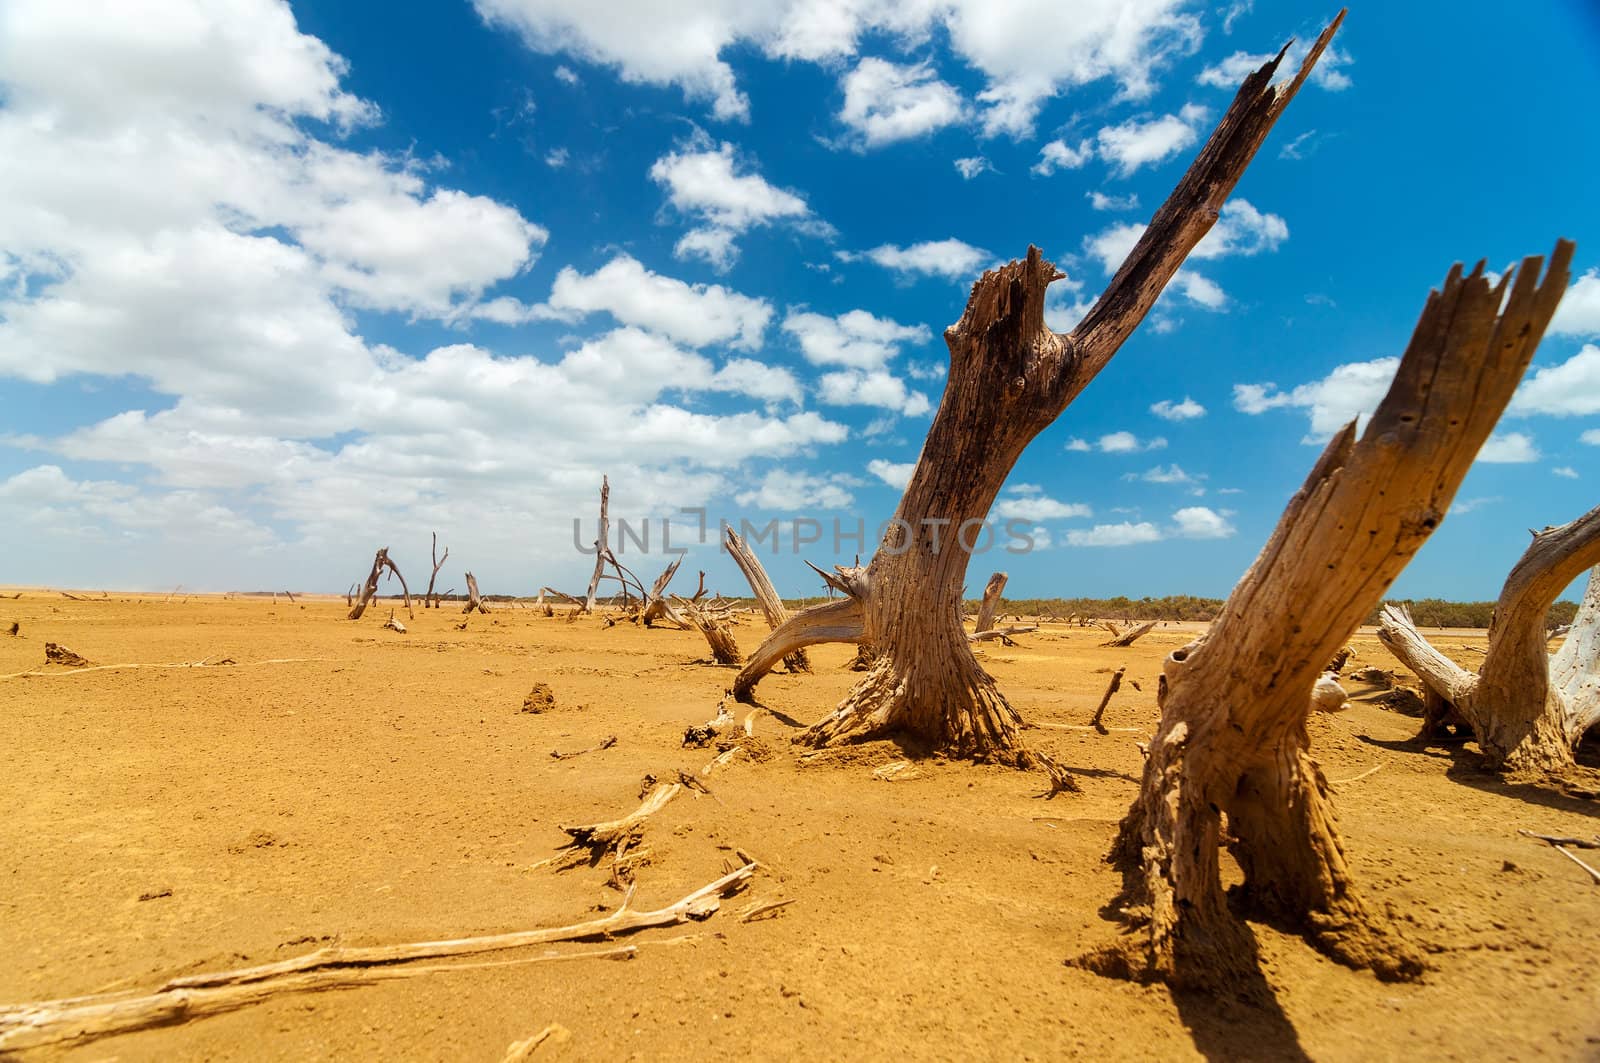 Dead trees in a dry desert wasteland in La Guajira, Colombia